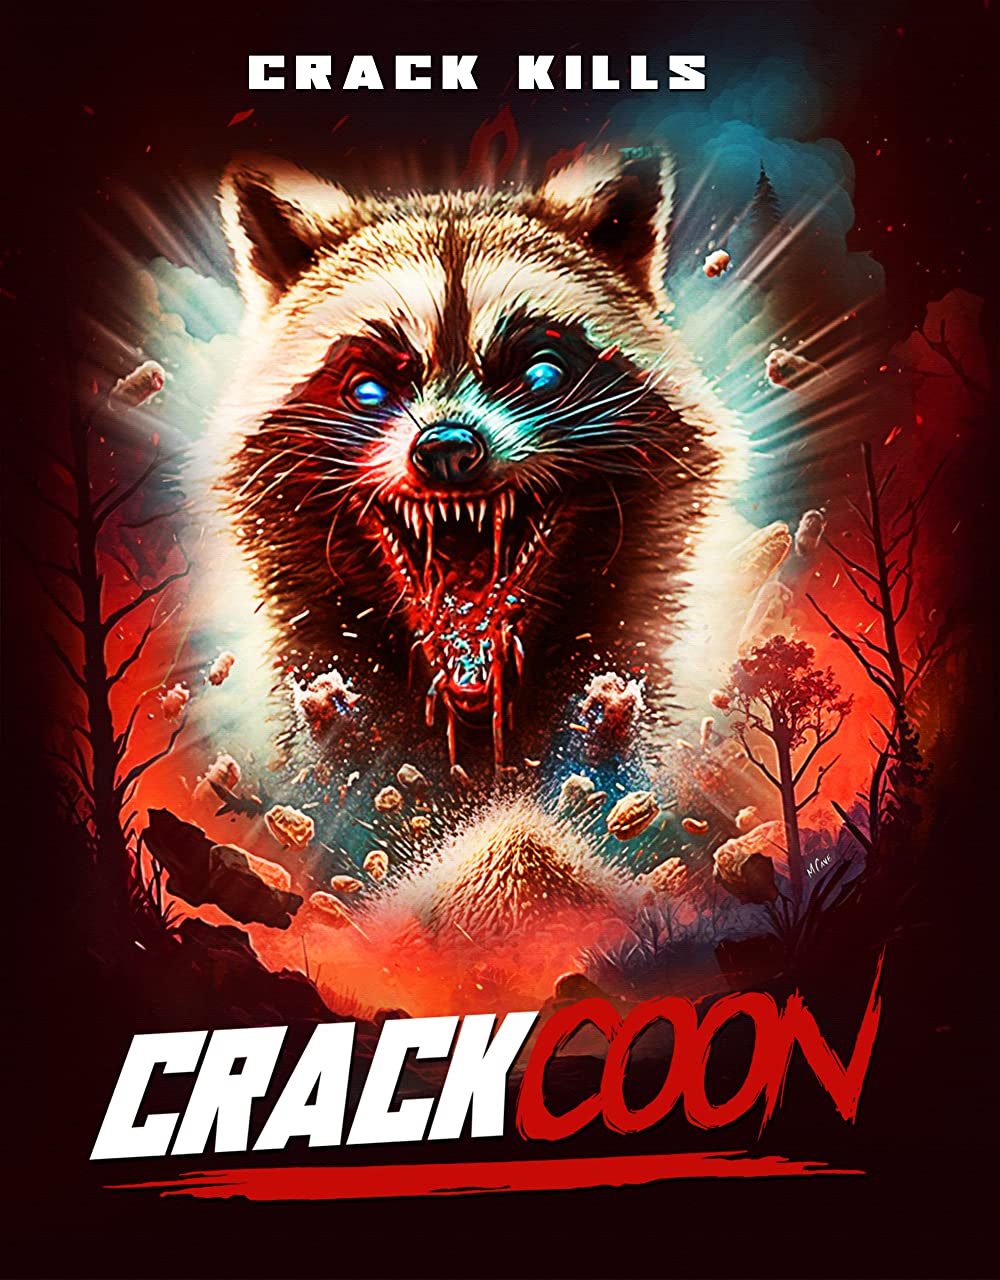 Crackcoon Trailer & Poster